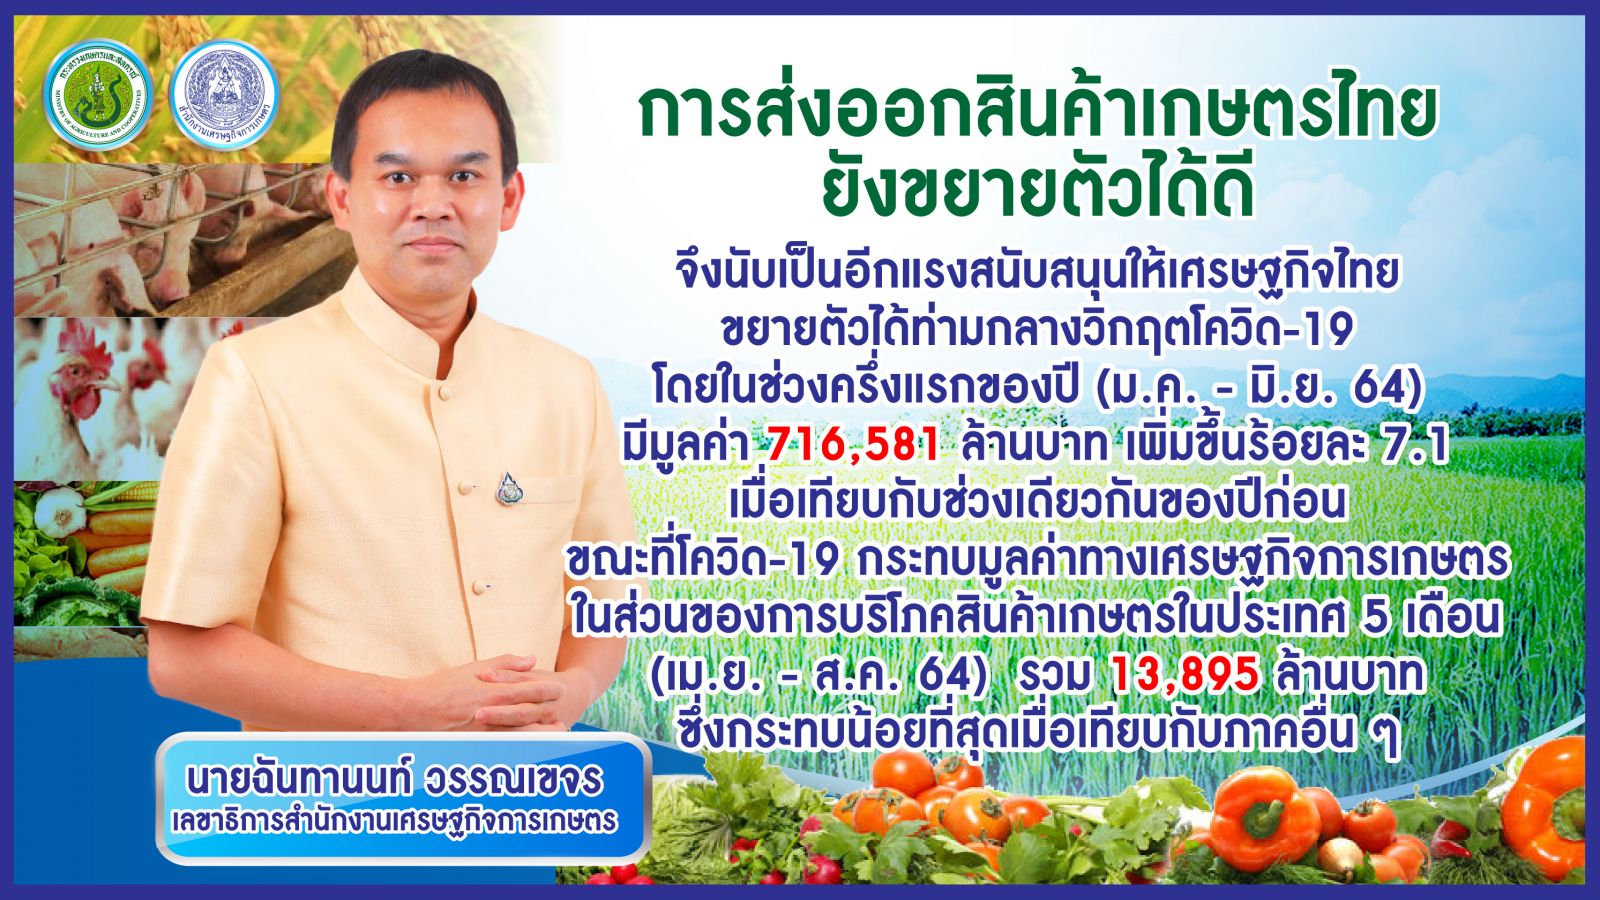 เกษตรฯ แถลง ส่งออกสินค้าเกษตรไทย 6 เดือน พุ่ง 716,581 ล้านบาท ขณะที่โควิด-19 กระทบเศรษฐกิจ ในส่วนของการบริโภคสินค้าเกษตร 5 เดือน เสียหาย 13,895 ล้านบาท